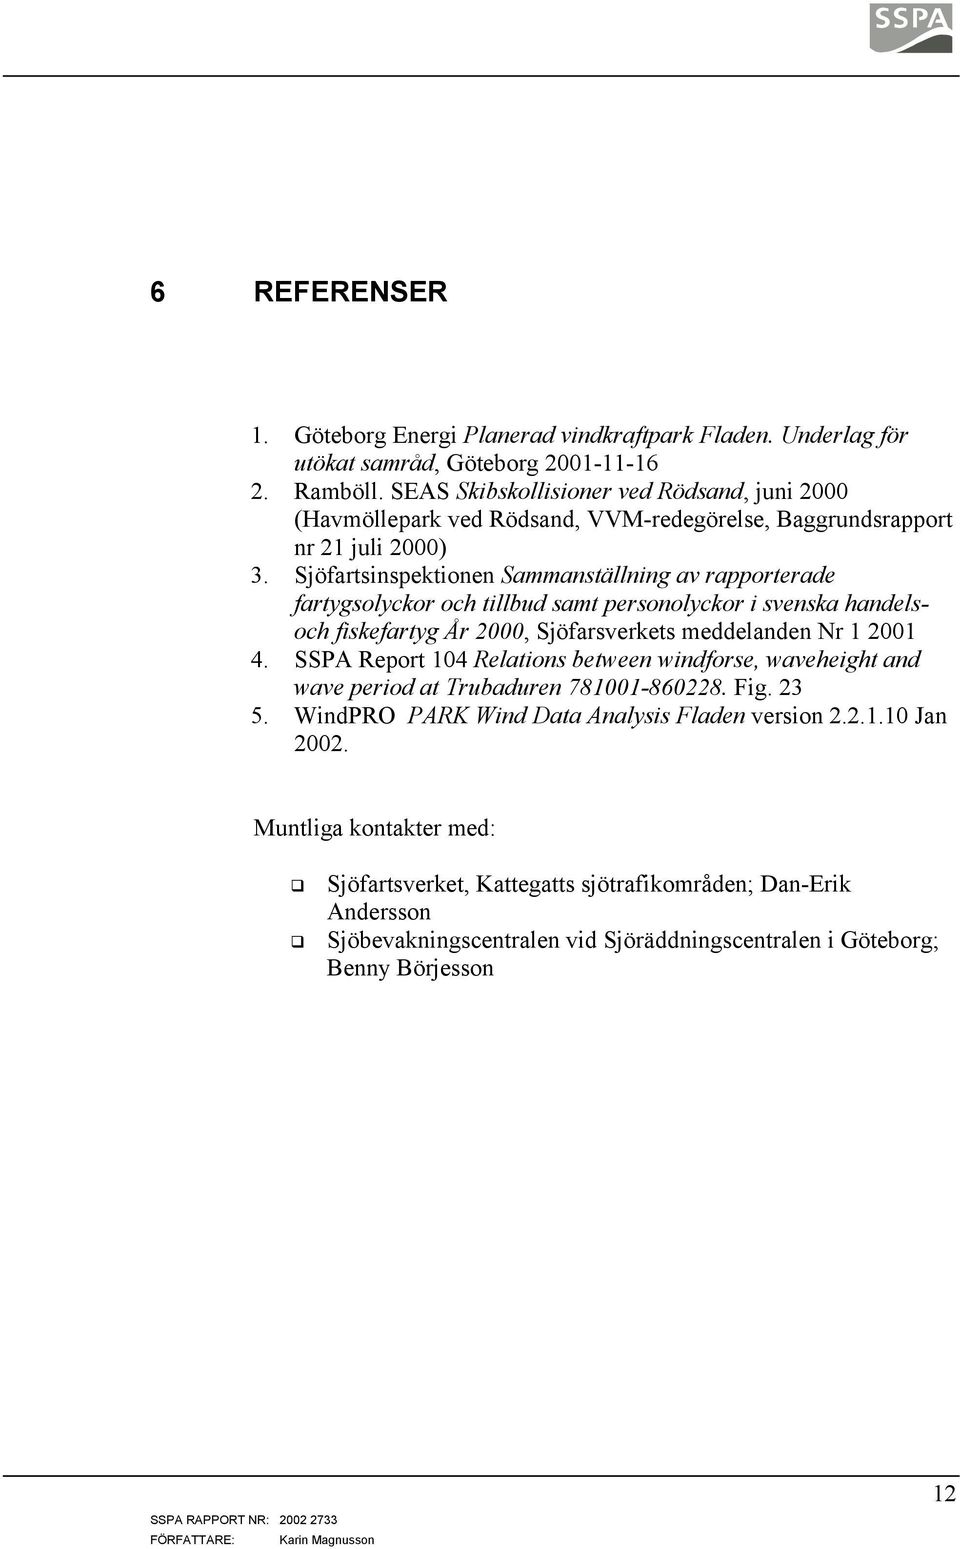 Sjöfartsinspektionen Sammanställning av rapporterade fartygsolyckor och tillbud samt personolyckor i svenska handelsoch fiskefartyg År 2000, Sjöfarsverkets meddelanden Nr 1 2001 4.